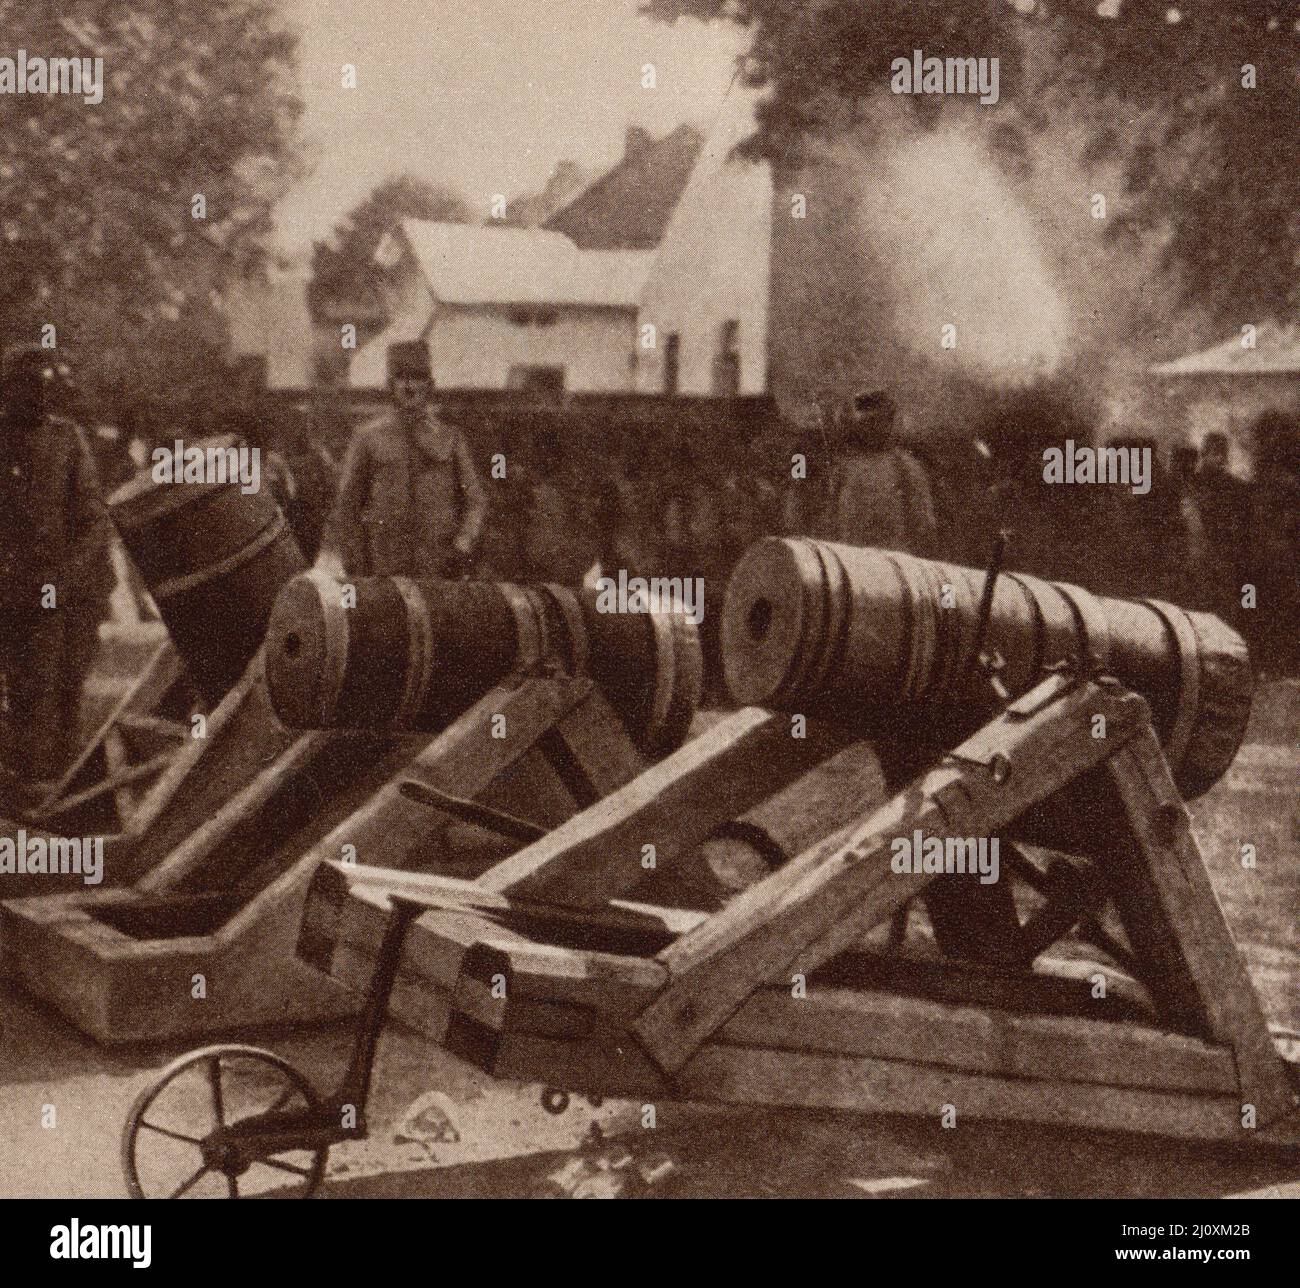 1st Guerra Mundial; morteros rusos de trincheras utilizados en Polonia, alrededor de 1915. Fotografía en blanco y negro Foto de stock